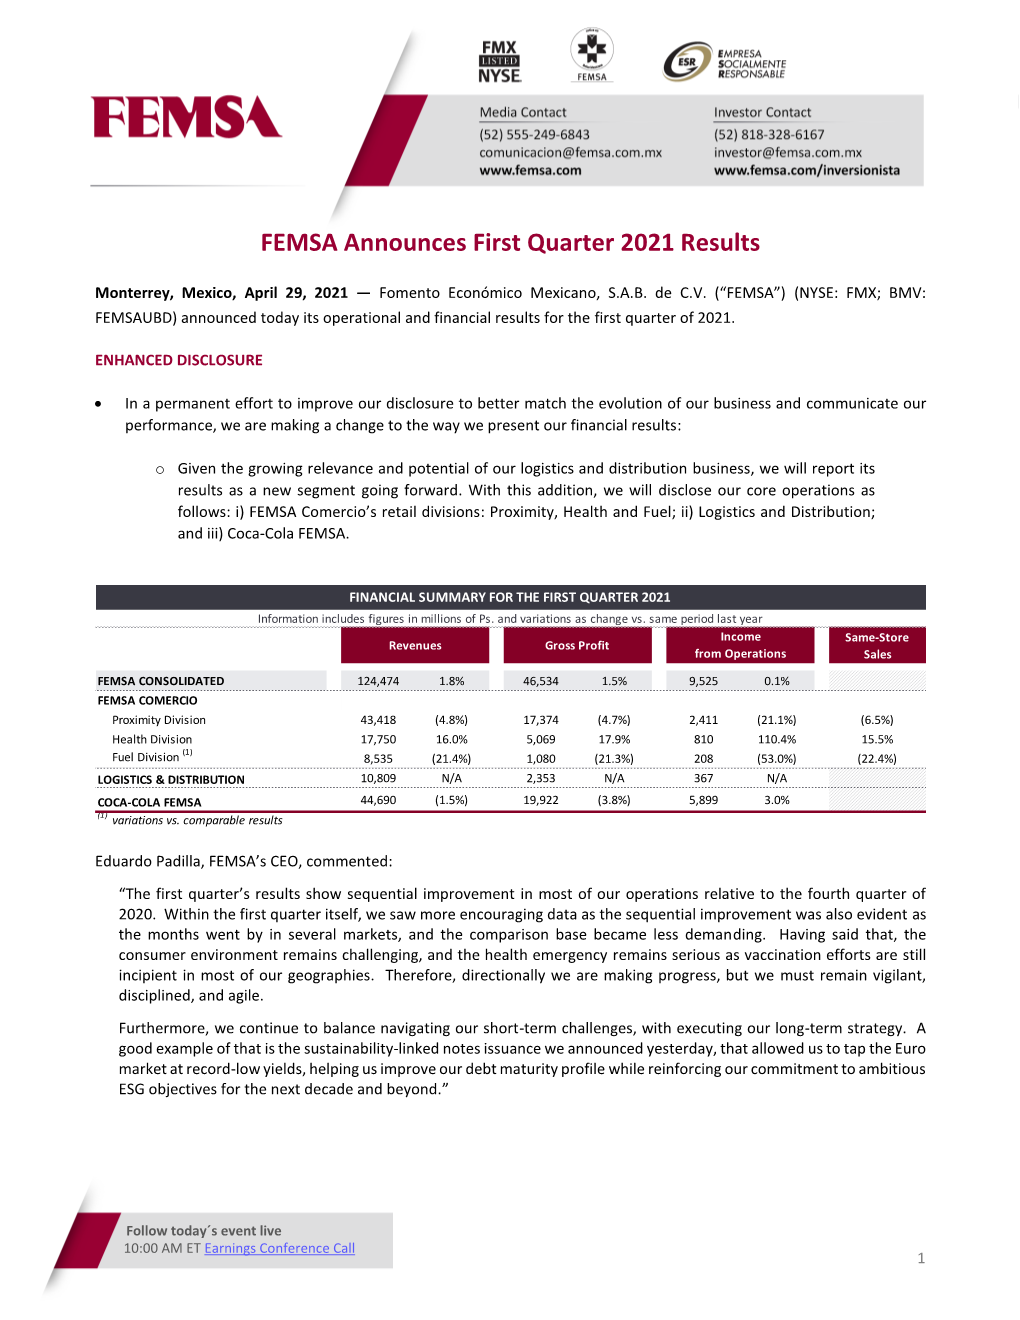 FEMSA Announces First Quarter 2021 Results